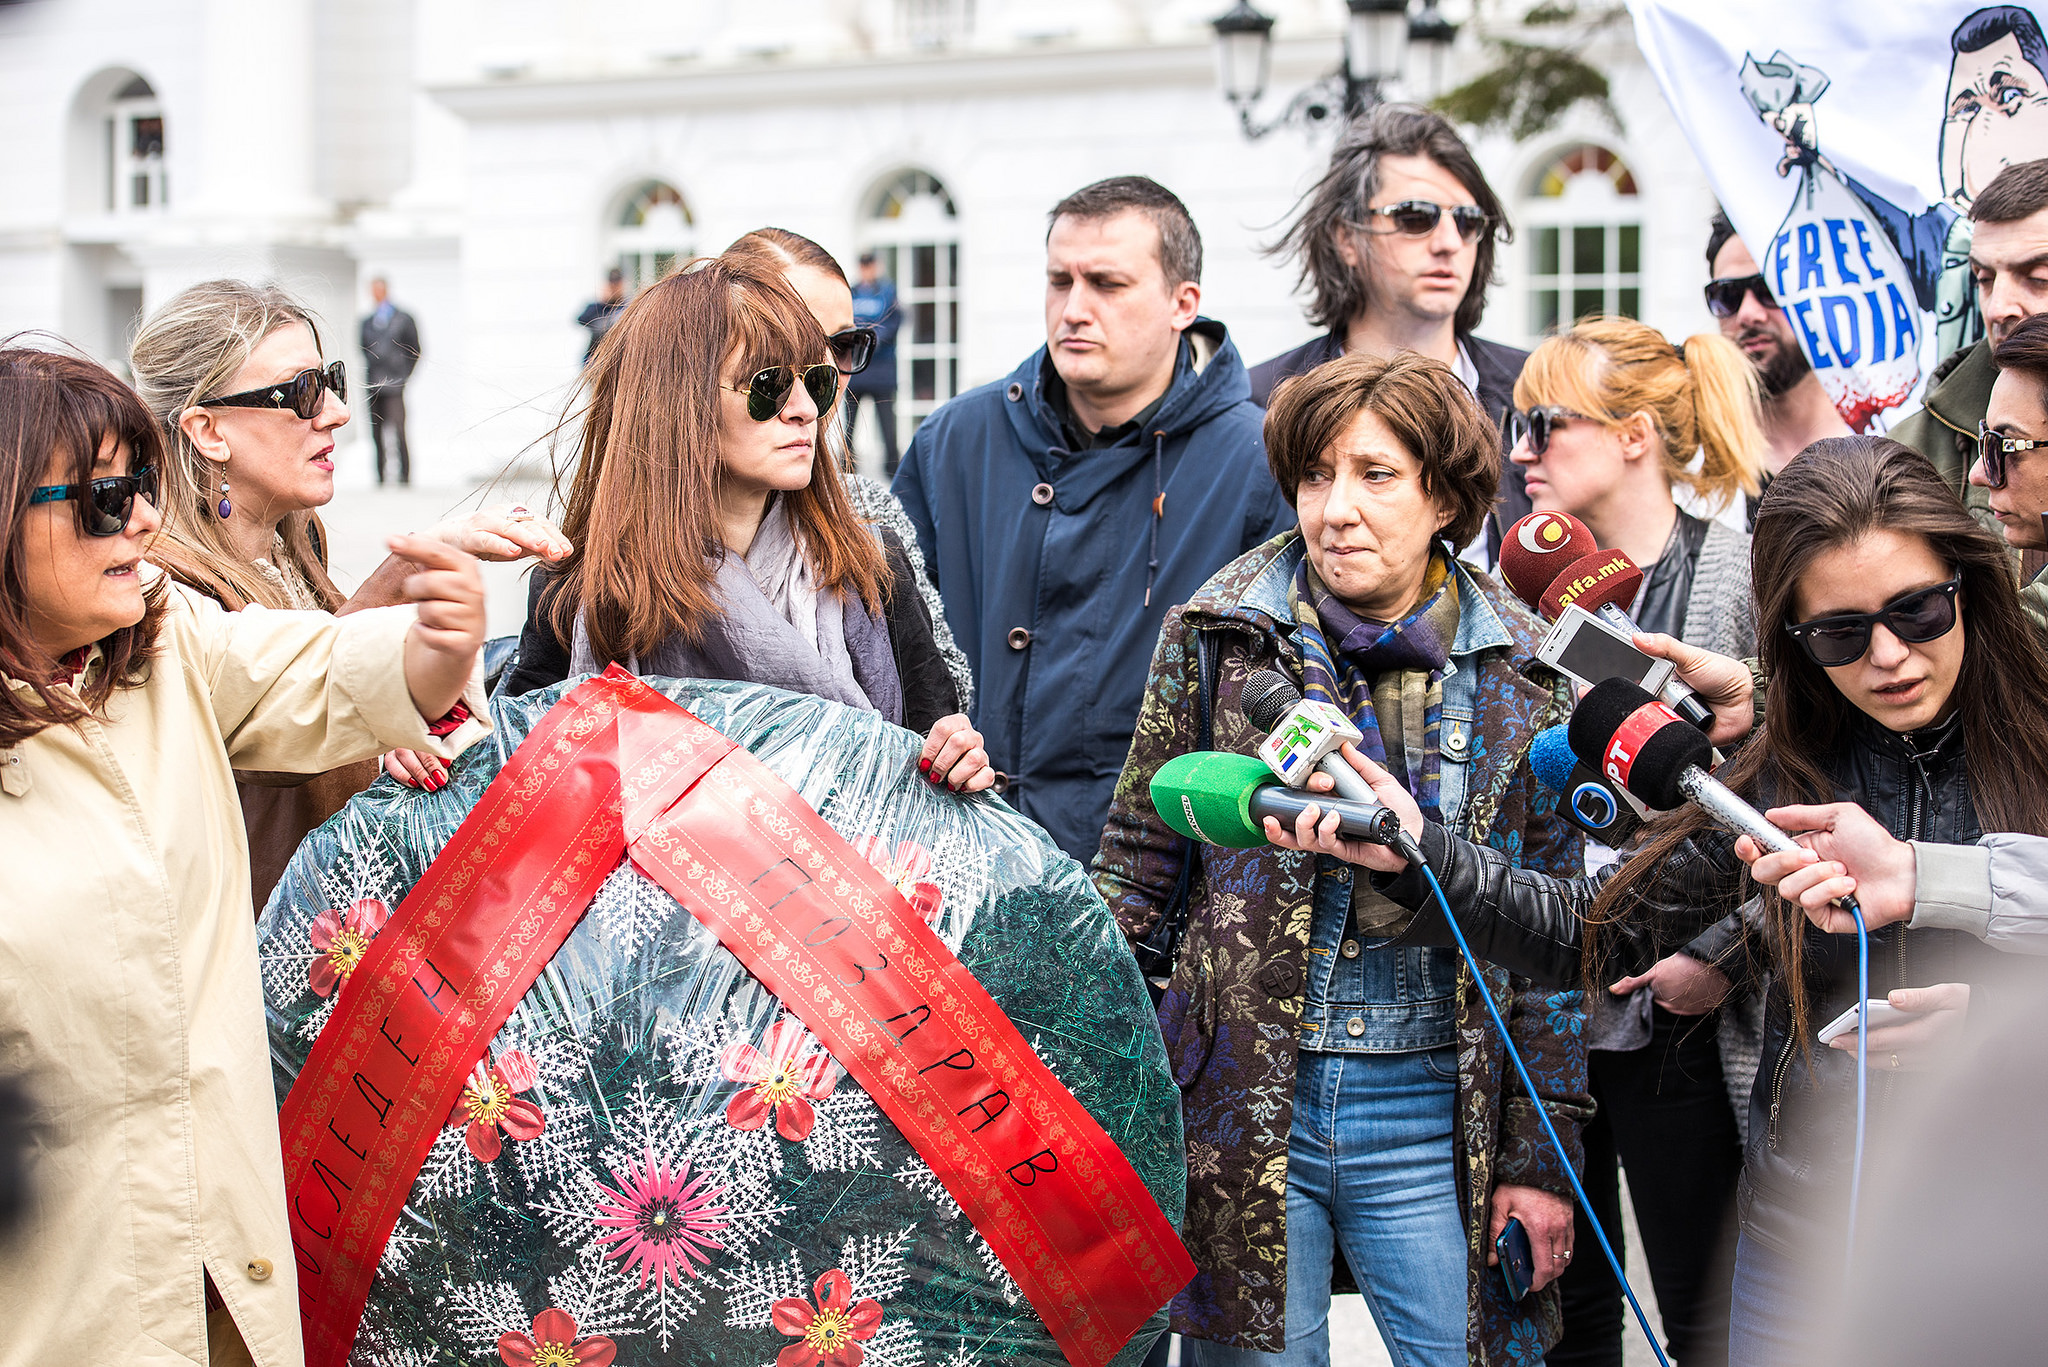 Неколку новинари дадоа изјави на протестот во Скопје во врска со смртните закани упатени кон новинарот Борјан Јовановски, држејќи го погребалниот венец кој беше доставен во неговиот дом како смртна закана во Април 2015 година. Слика на Ванчо Џамаски, преземена со дозвола.